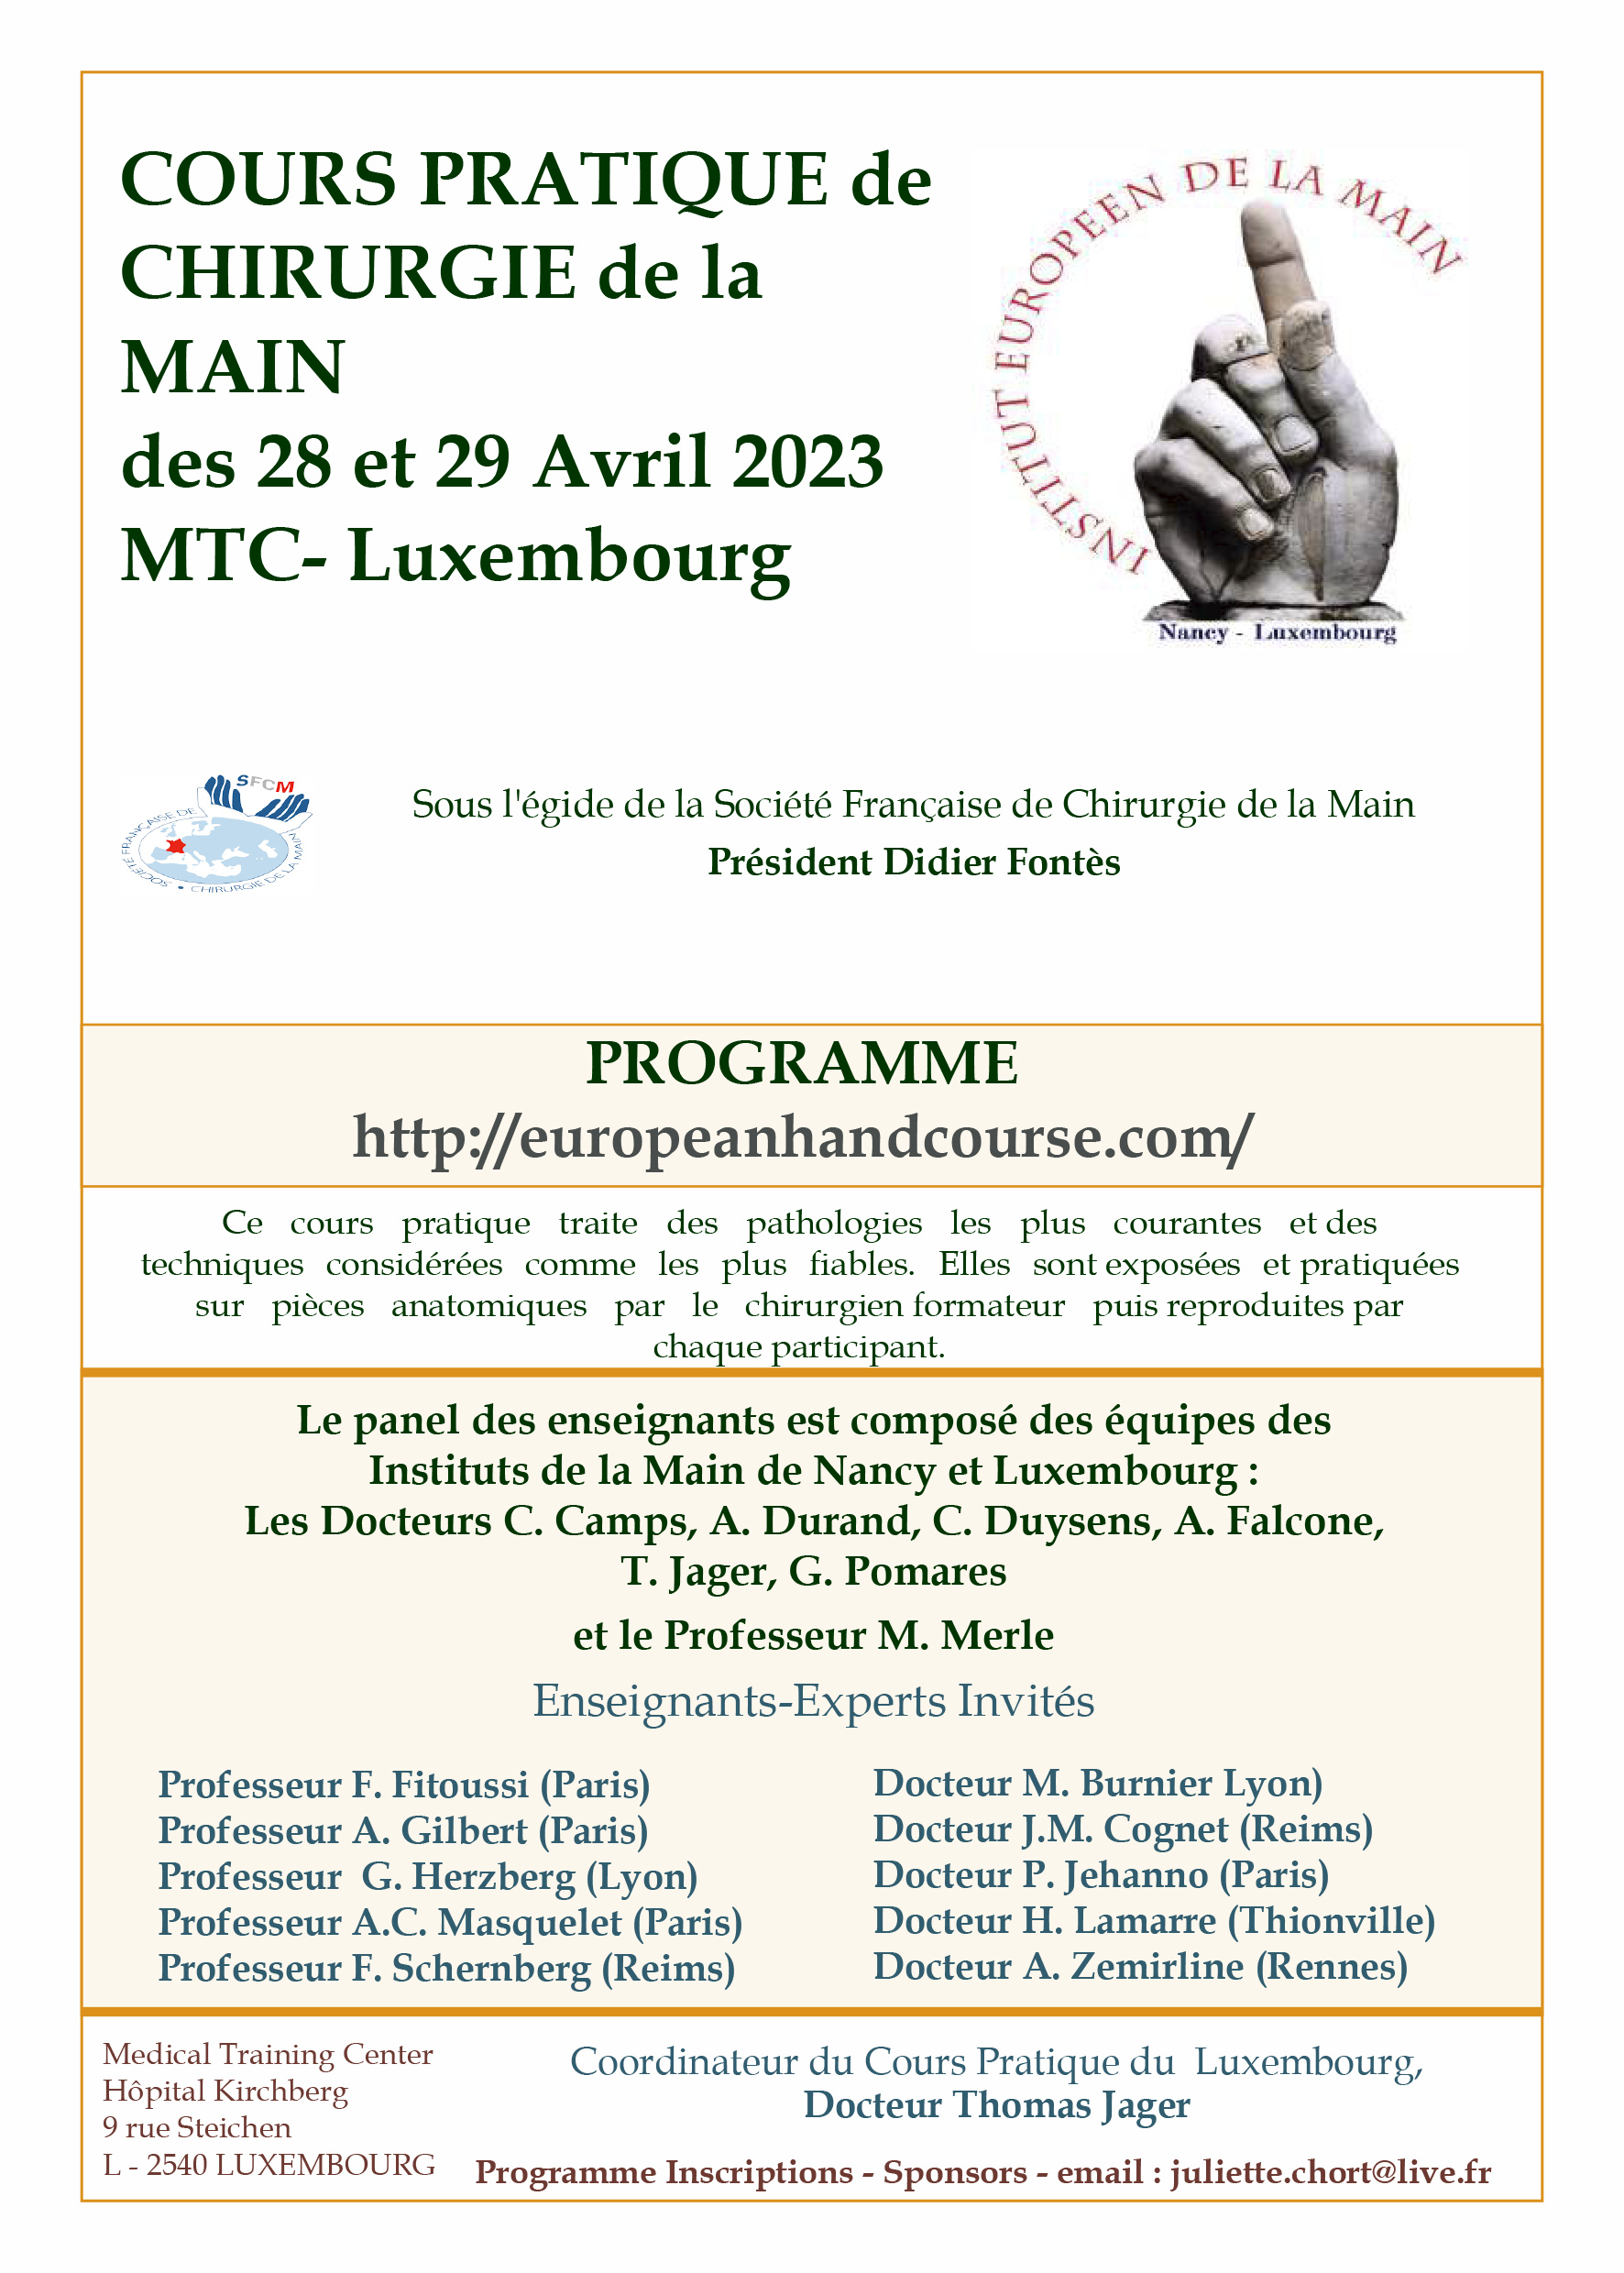 <strong>Luxemburgo 2023:</strong> Cours Pratique de Chirurgie de la Main